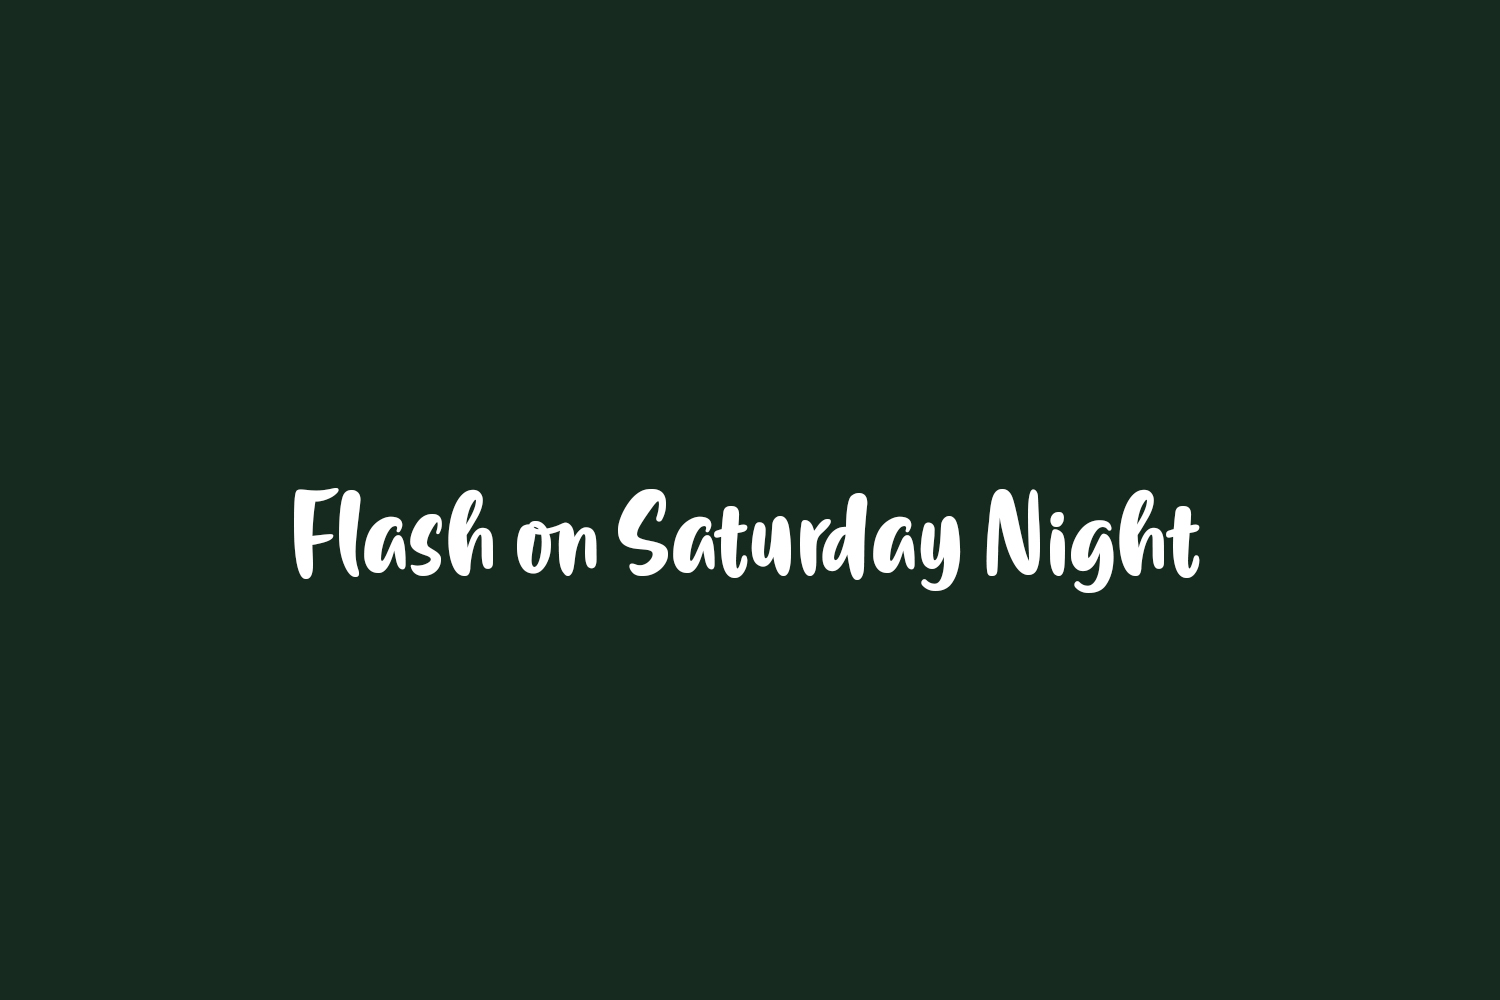 Flash on Saturday Night